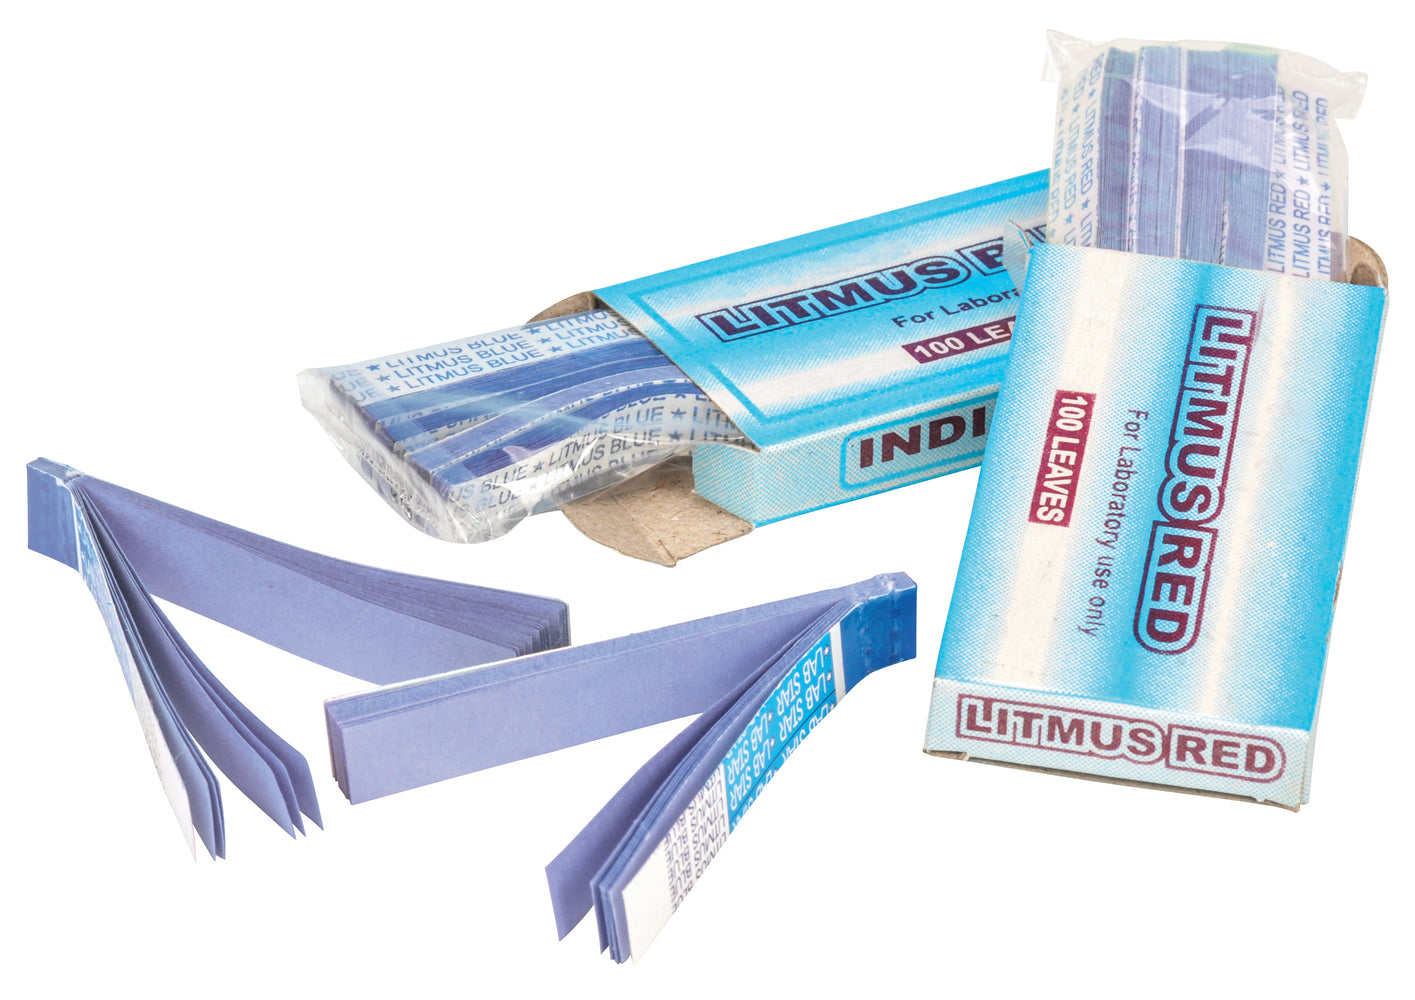 Paper Test Litmus, Blue, in cardboard box